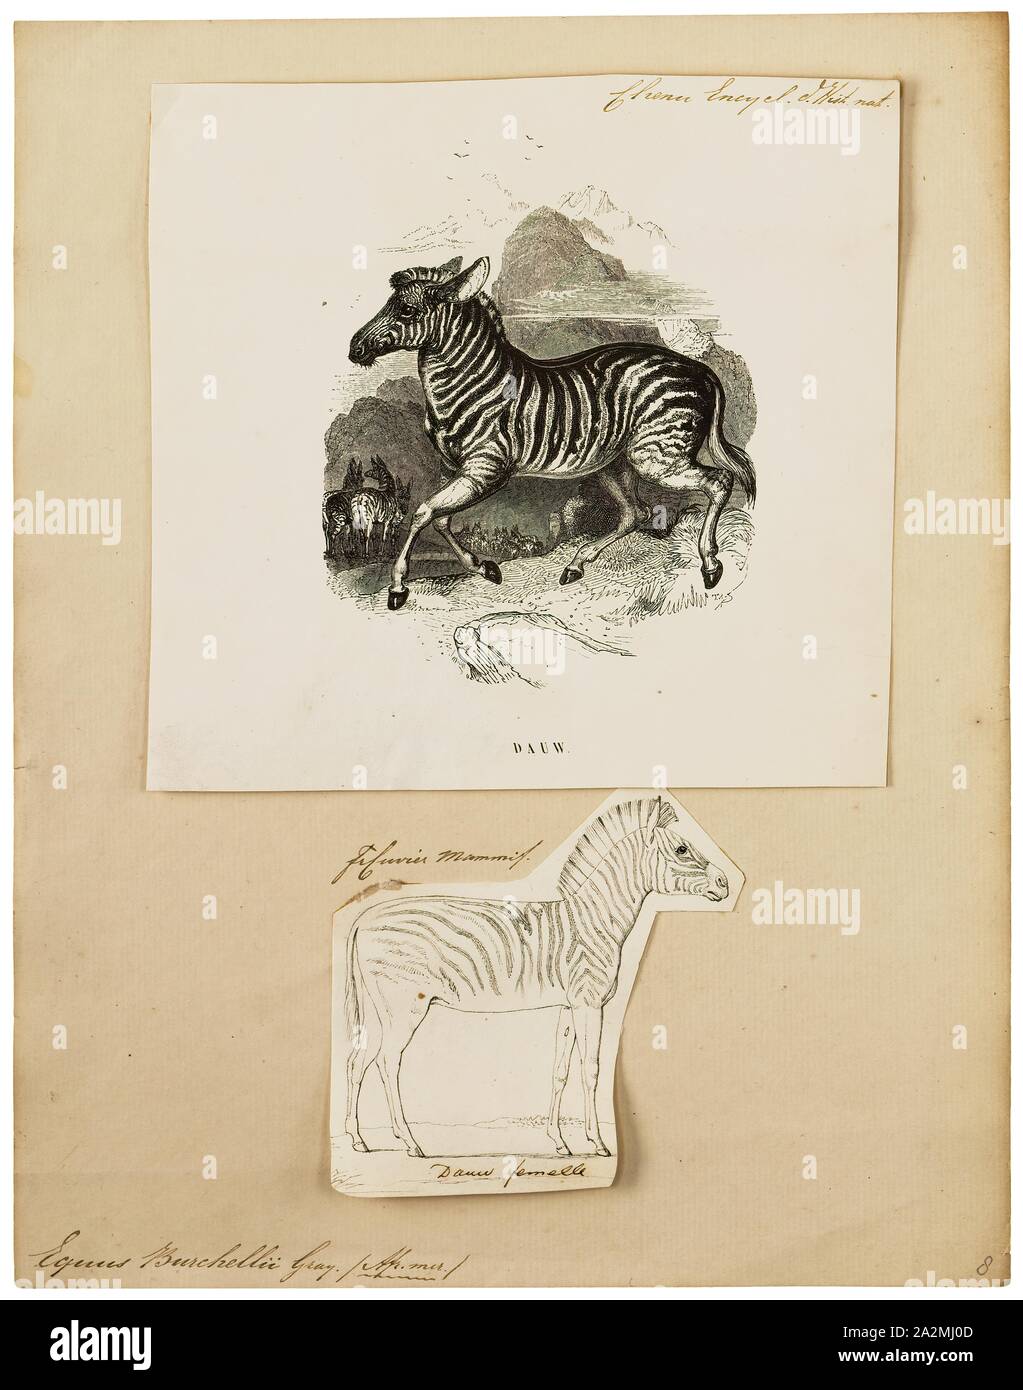 Equus burchellii, Drucken, Burchell's Zebra (Equus quagga burchellii) ist eine Unterart der Plains Zebra. Es ist benannt nach dem britischen Entdecker und Naturforscher William John burchell. Gemeinsamen Namen gehören die bontequagga, Damaraland, und Zululand zebra Zebra (Gray, 1824). Burchell's Zebra ist die einzige Unterart von Zebra, die rechtlich für den menschlichen Verzehr gezüchtet werden., 1700-1880 Stockfoto